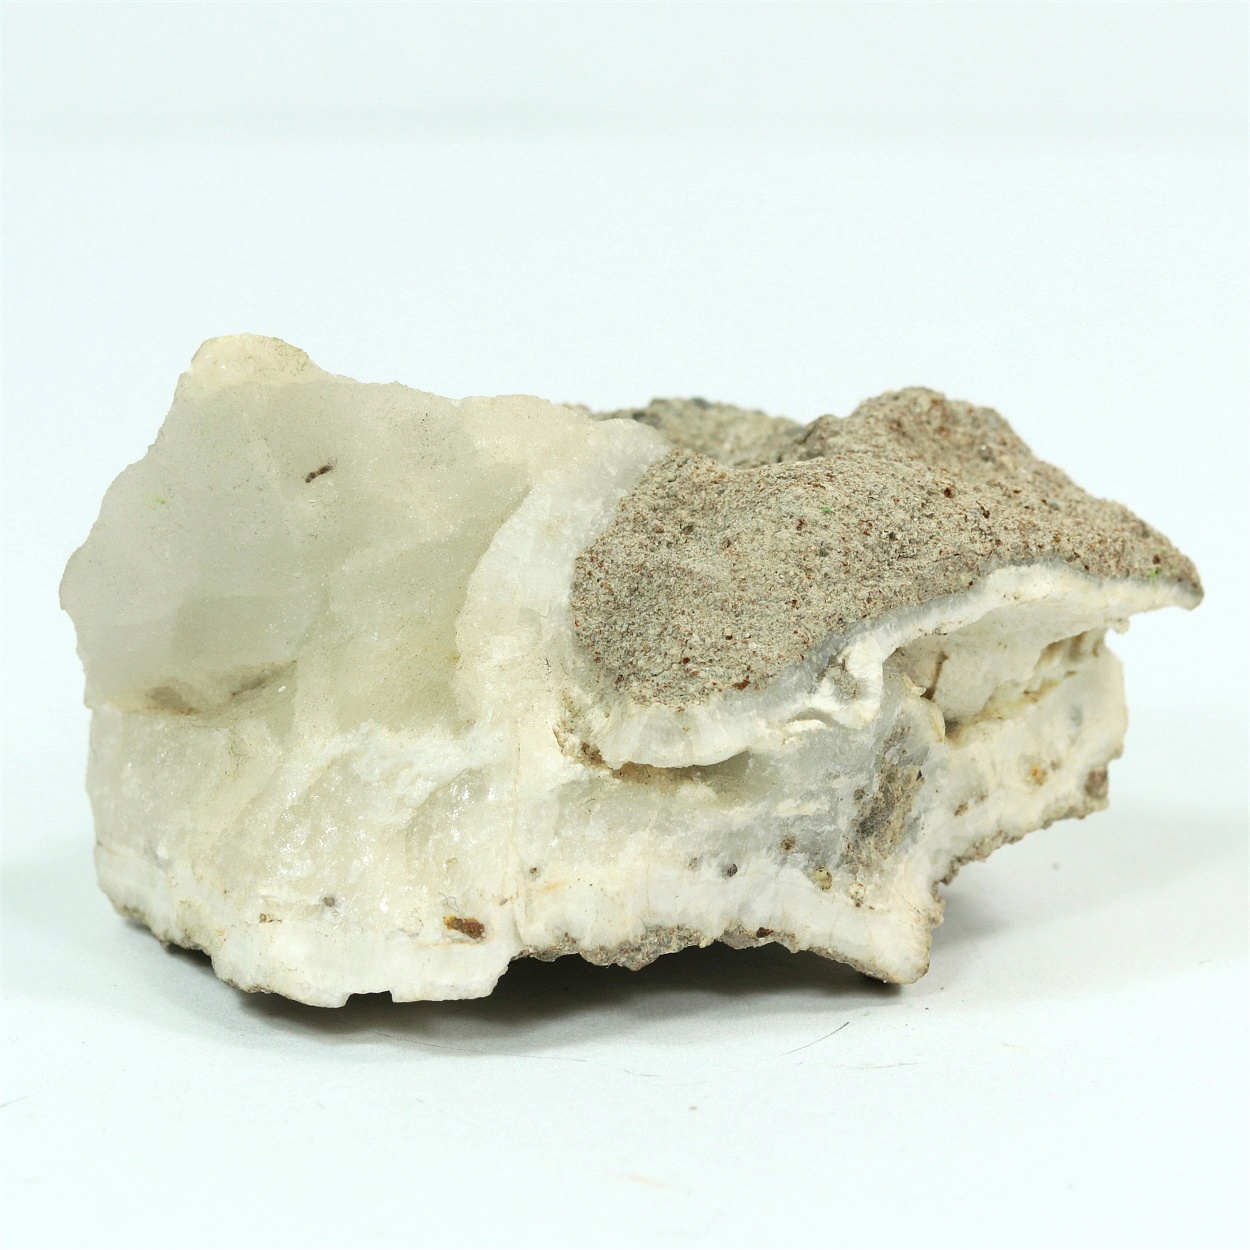 Aluminite With Calcite